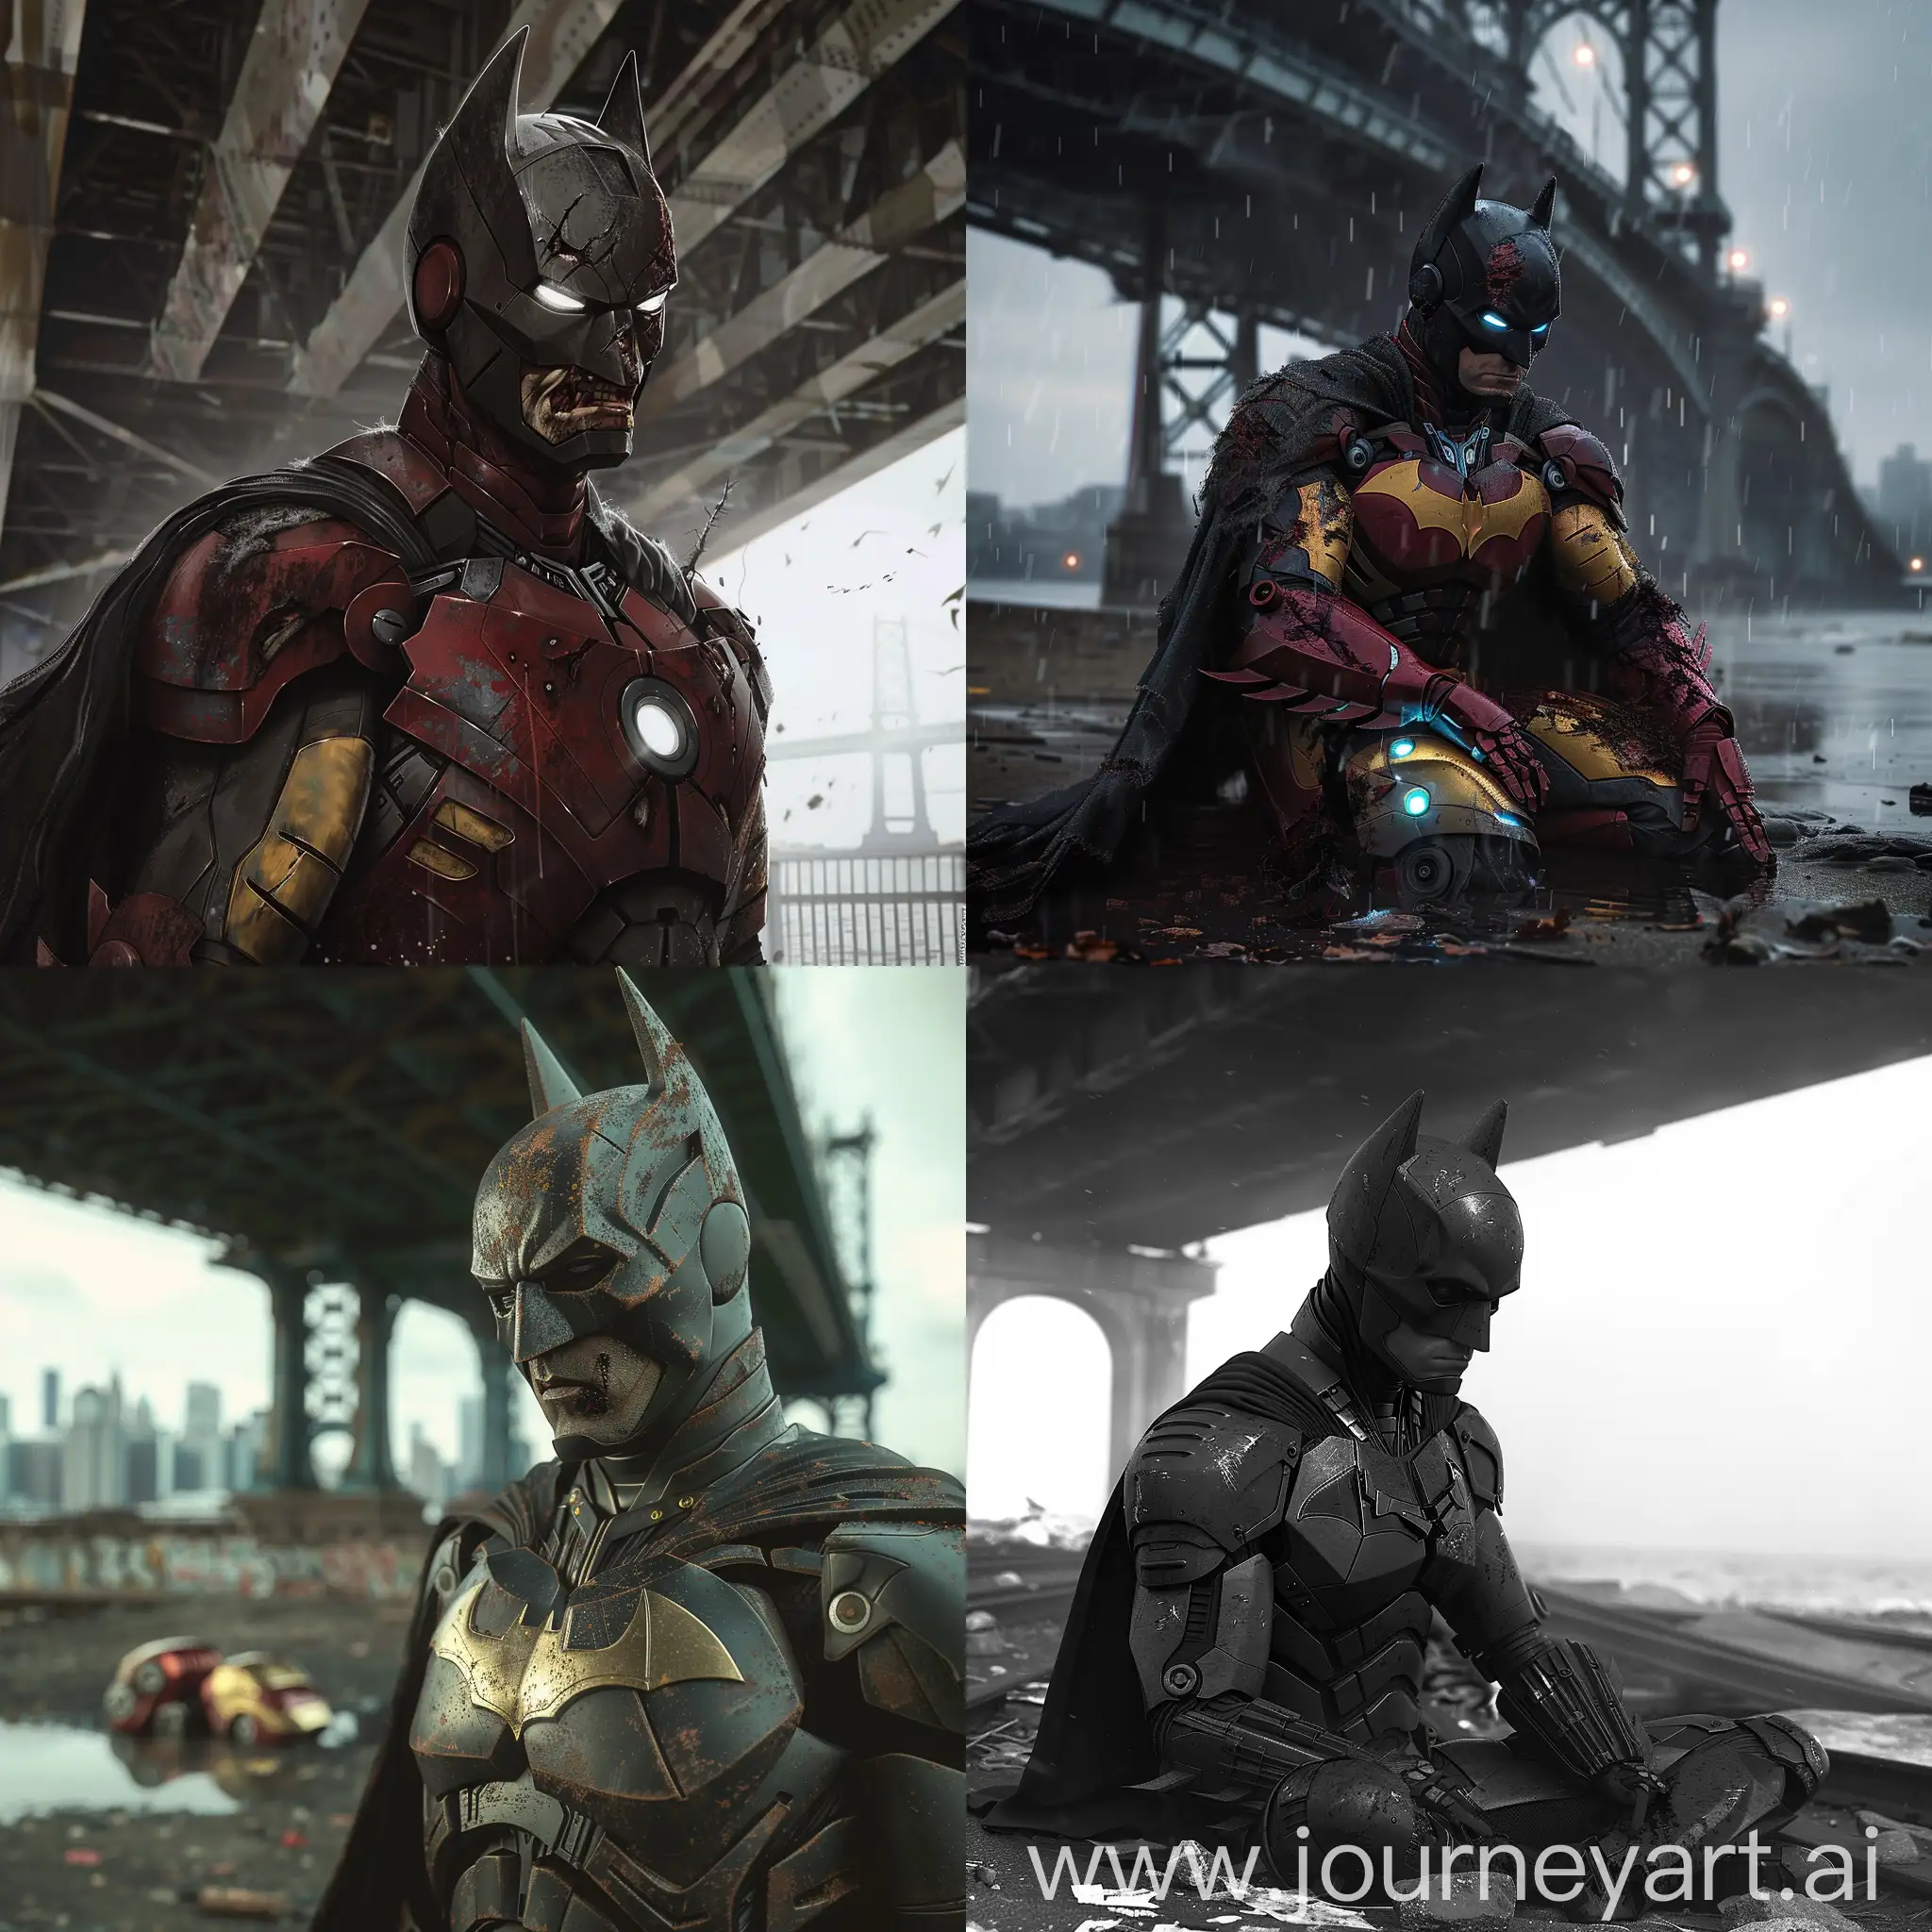 Urban-Vigilante-Poor-Batman-Under-Bridge-with-Torn-Vigilante-Outfit-and-Iron-Man-Helmet